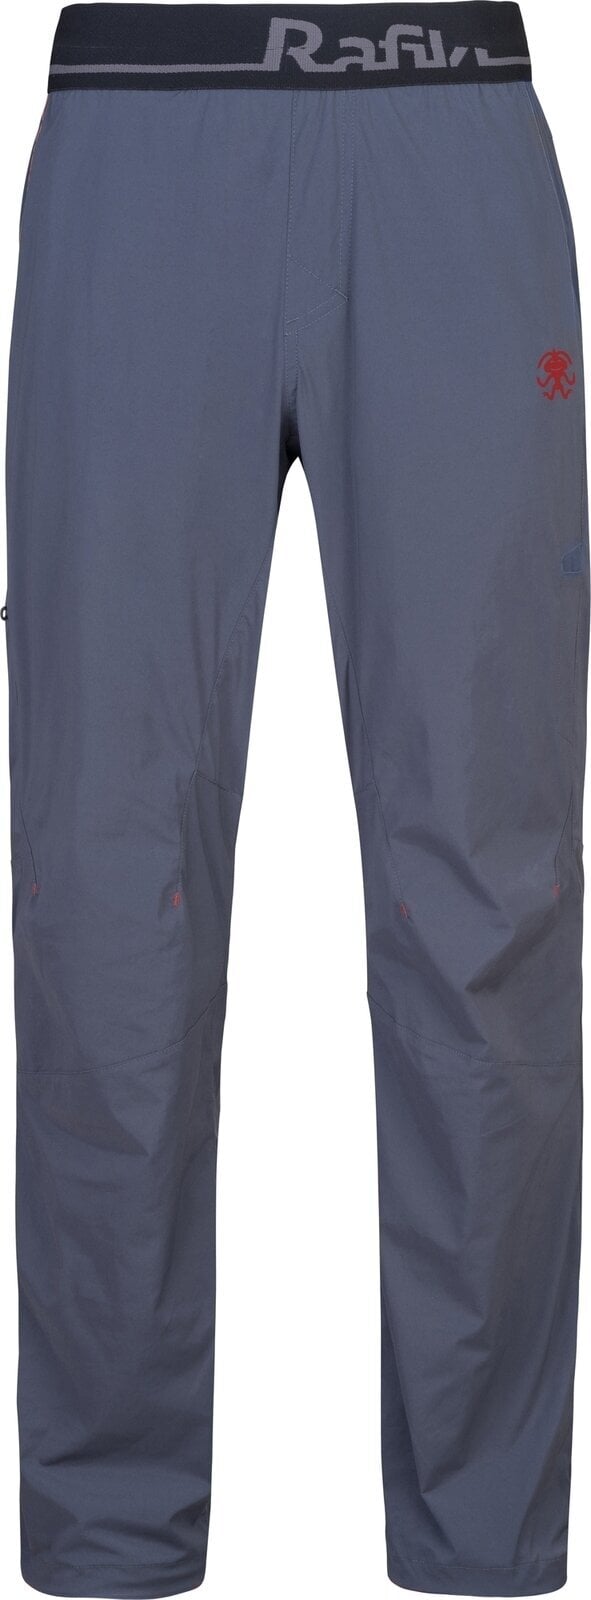 Pantalones para exteriores Rafiki Drive Man Pants India Ink XL Pantalones para exteriores